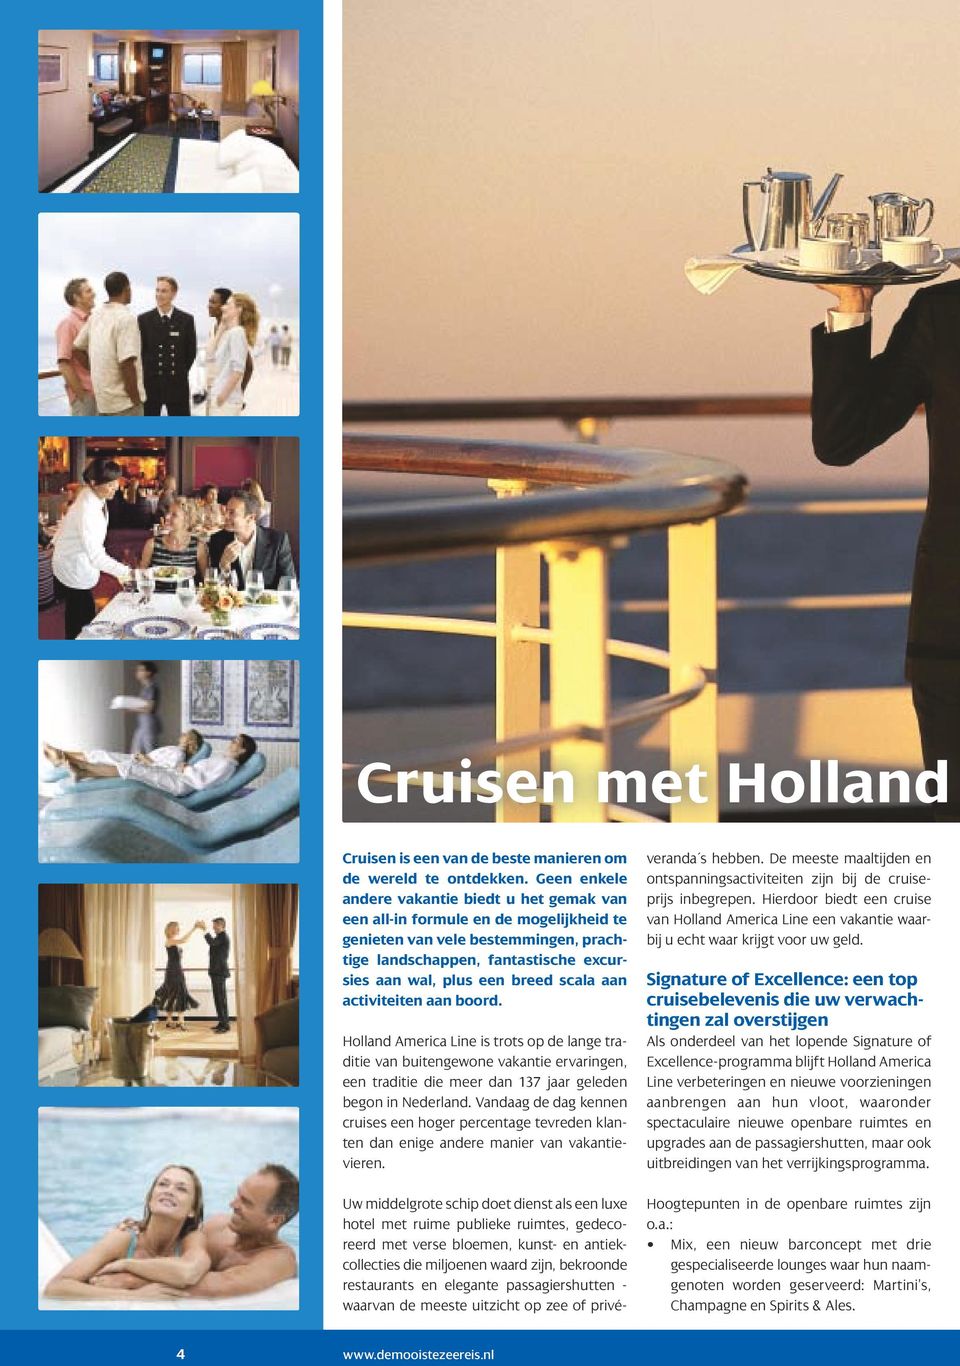 aan activiteiten aan boord. Holland America Line is trots op de lange traditie van buitengewone vakantie ervaringen, een traditie die meer dan 137 jaar geleden begon in Nederland.